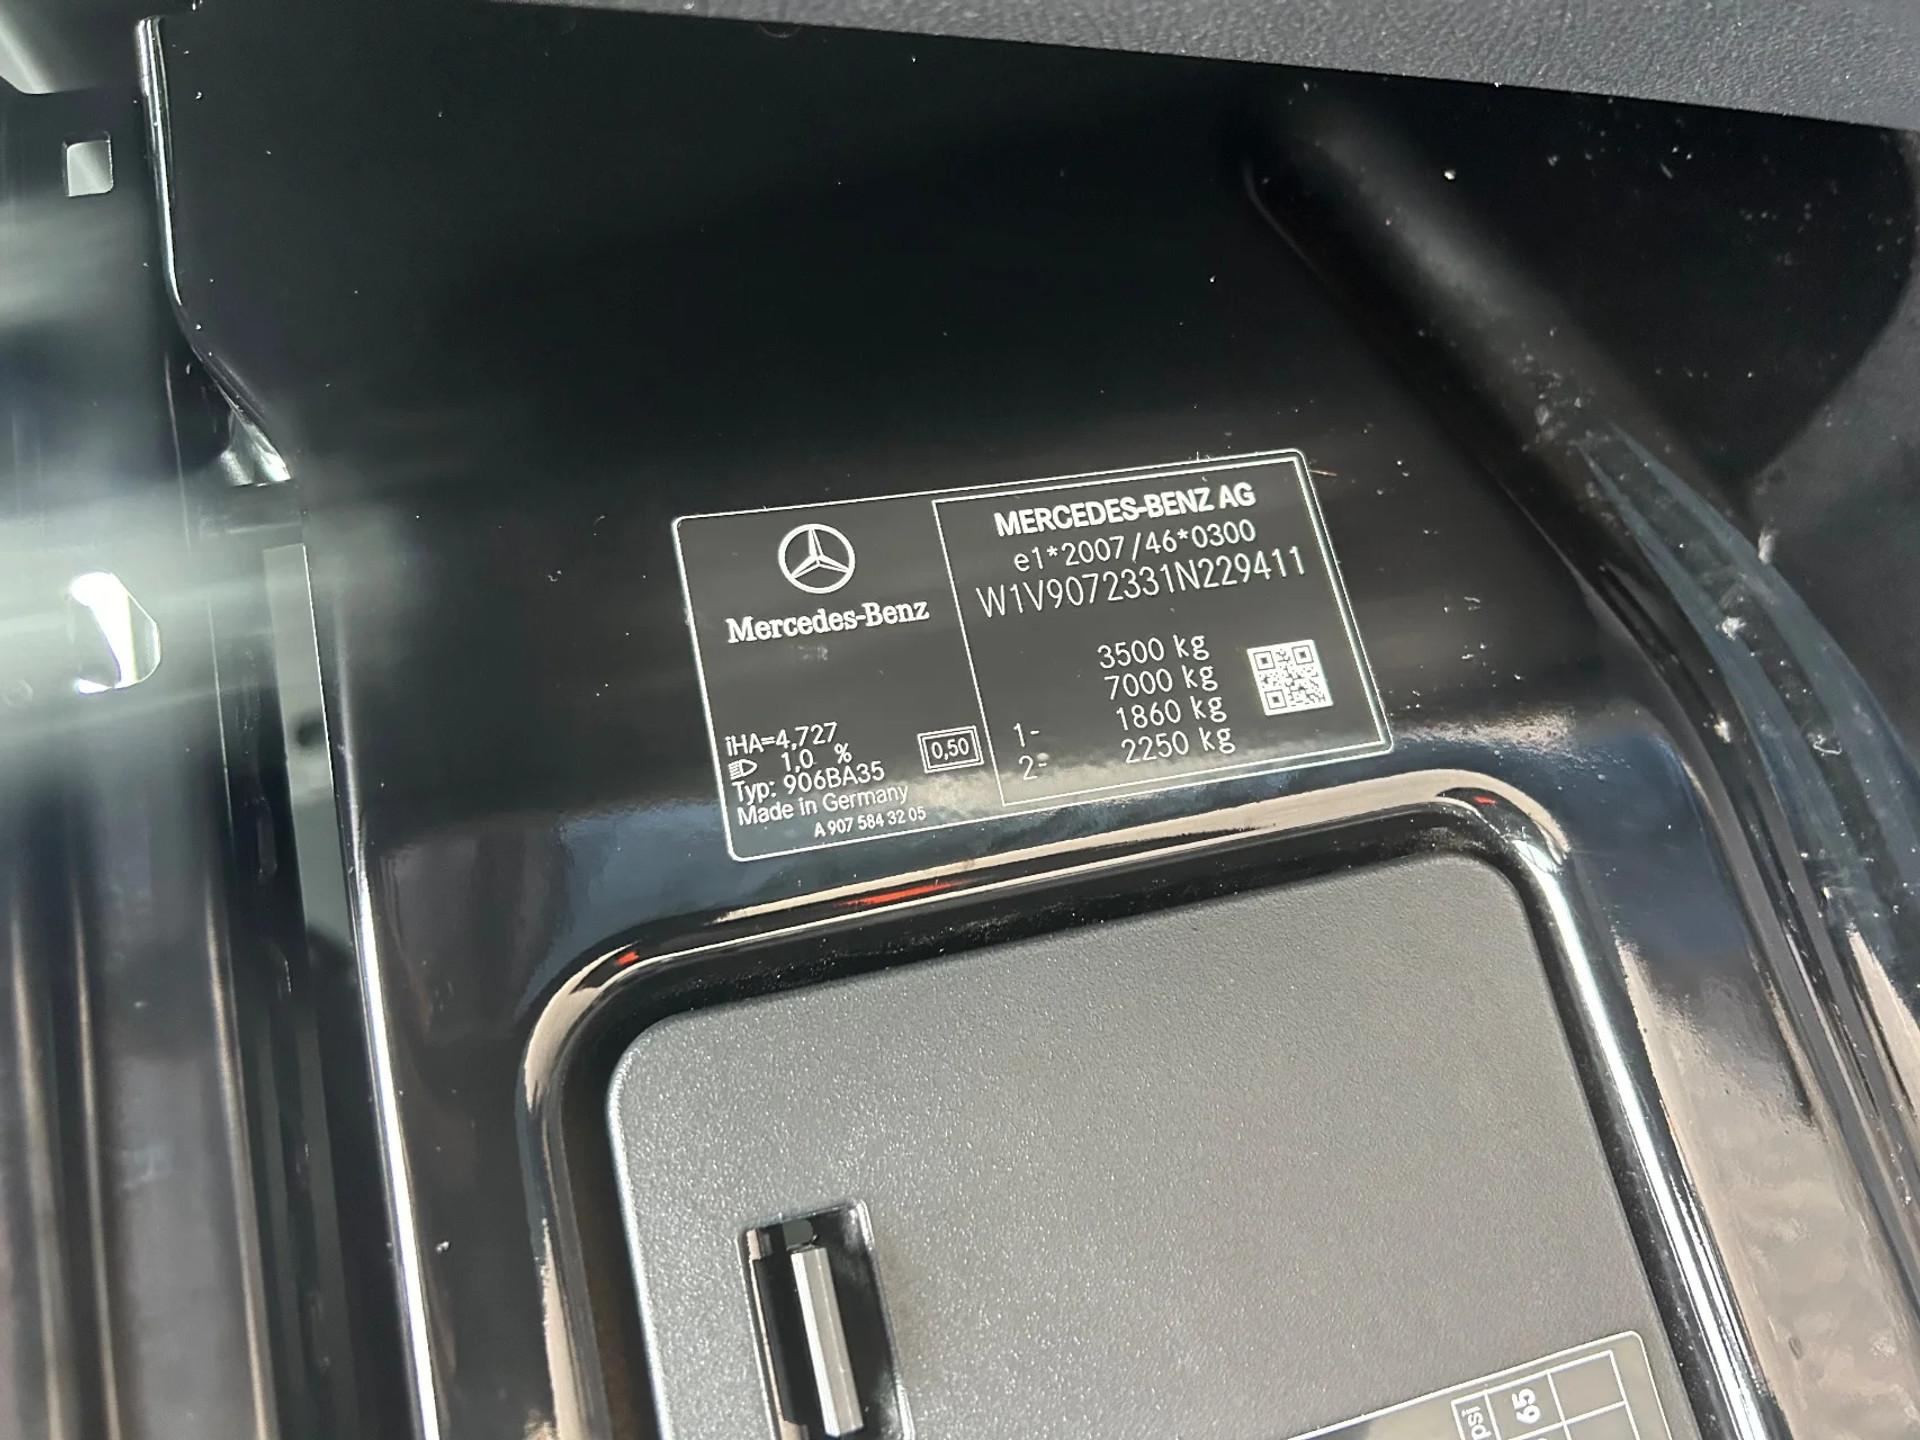 Foto 11 van Mercedes-Benz Sprinter 317CDI Dubbelcabine Openlaadbak Airco 3500KG Trekhaak